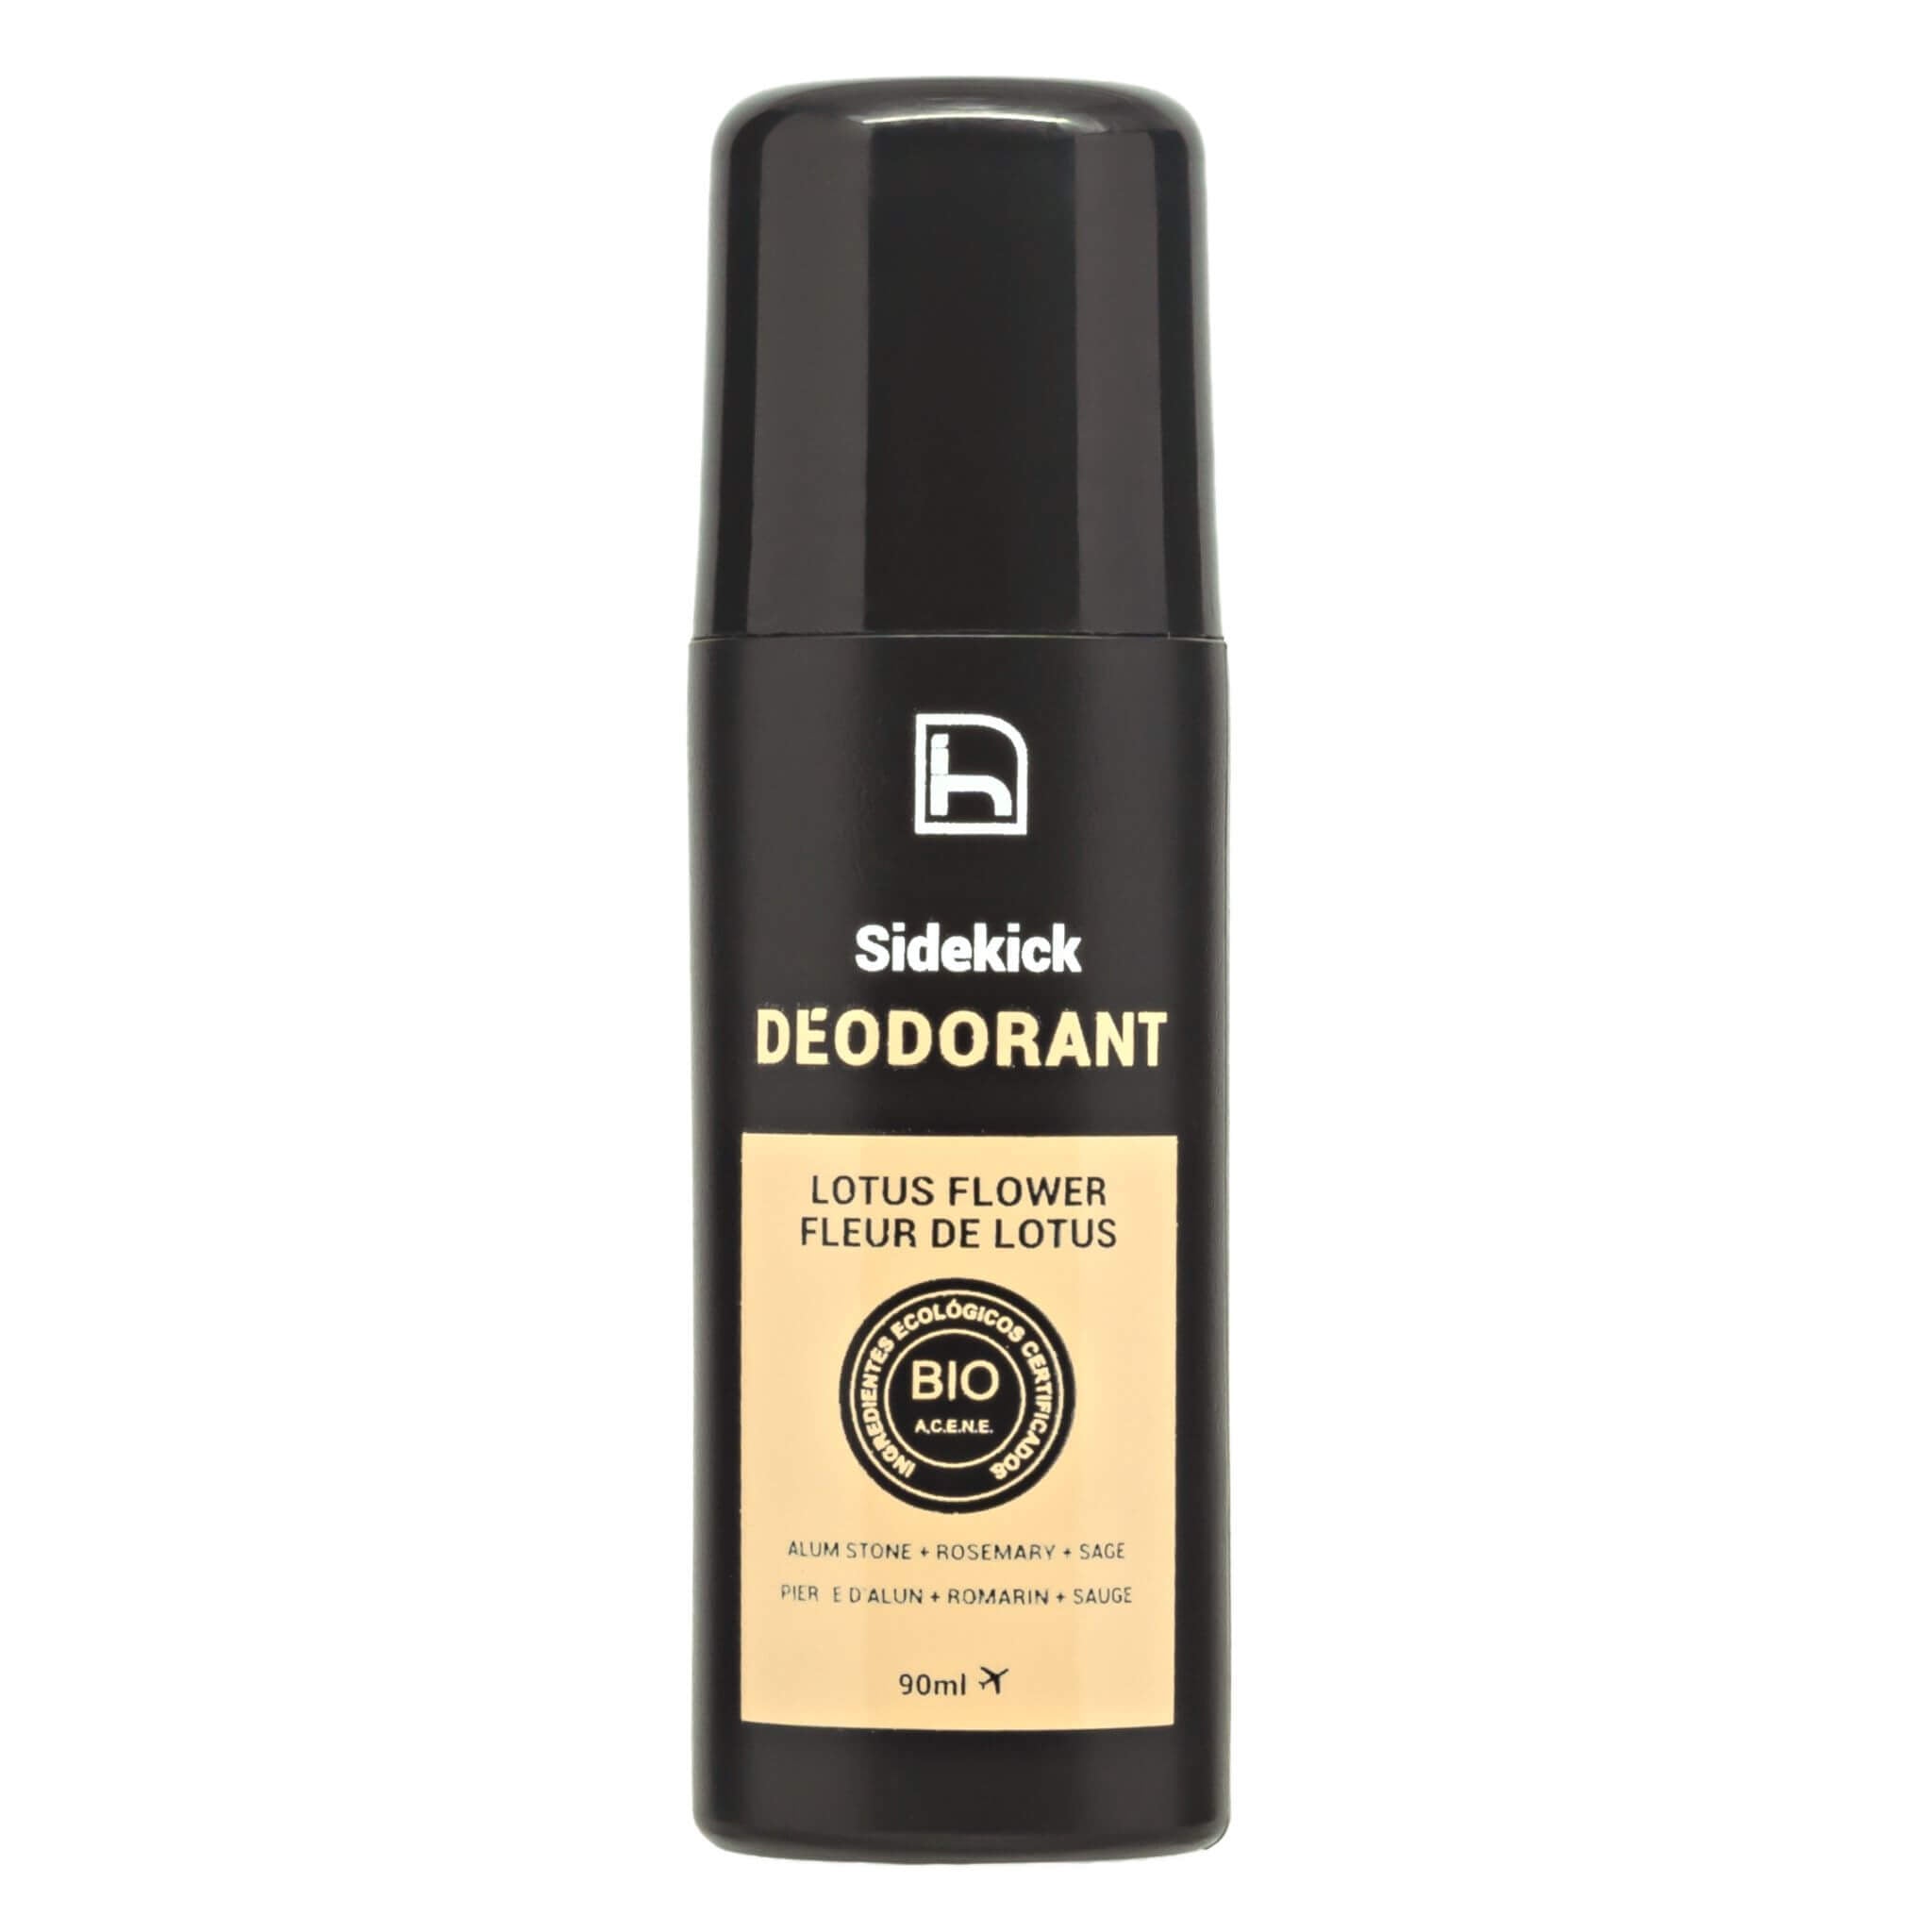 Desodorante natural roll on para hombre. Certificado bio y vegan